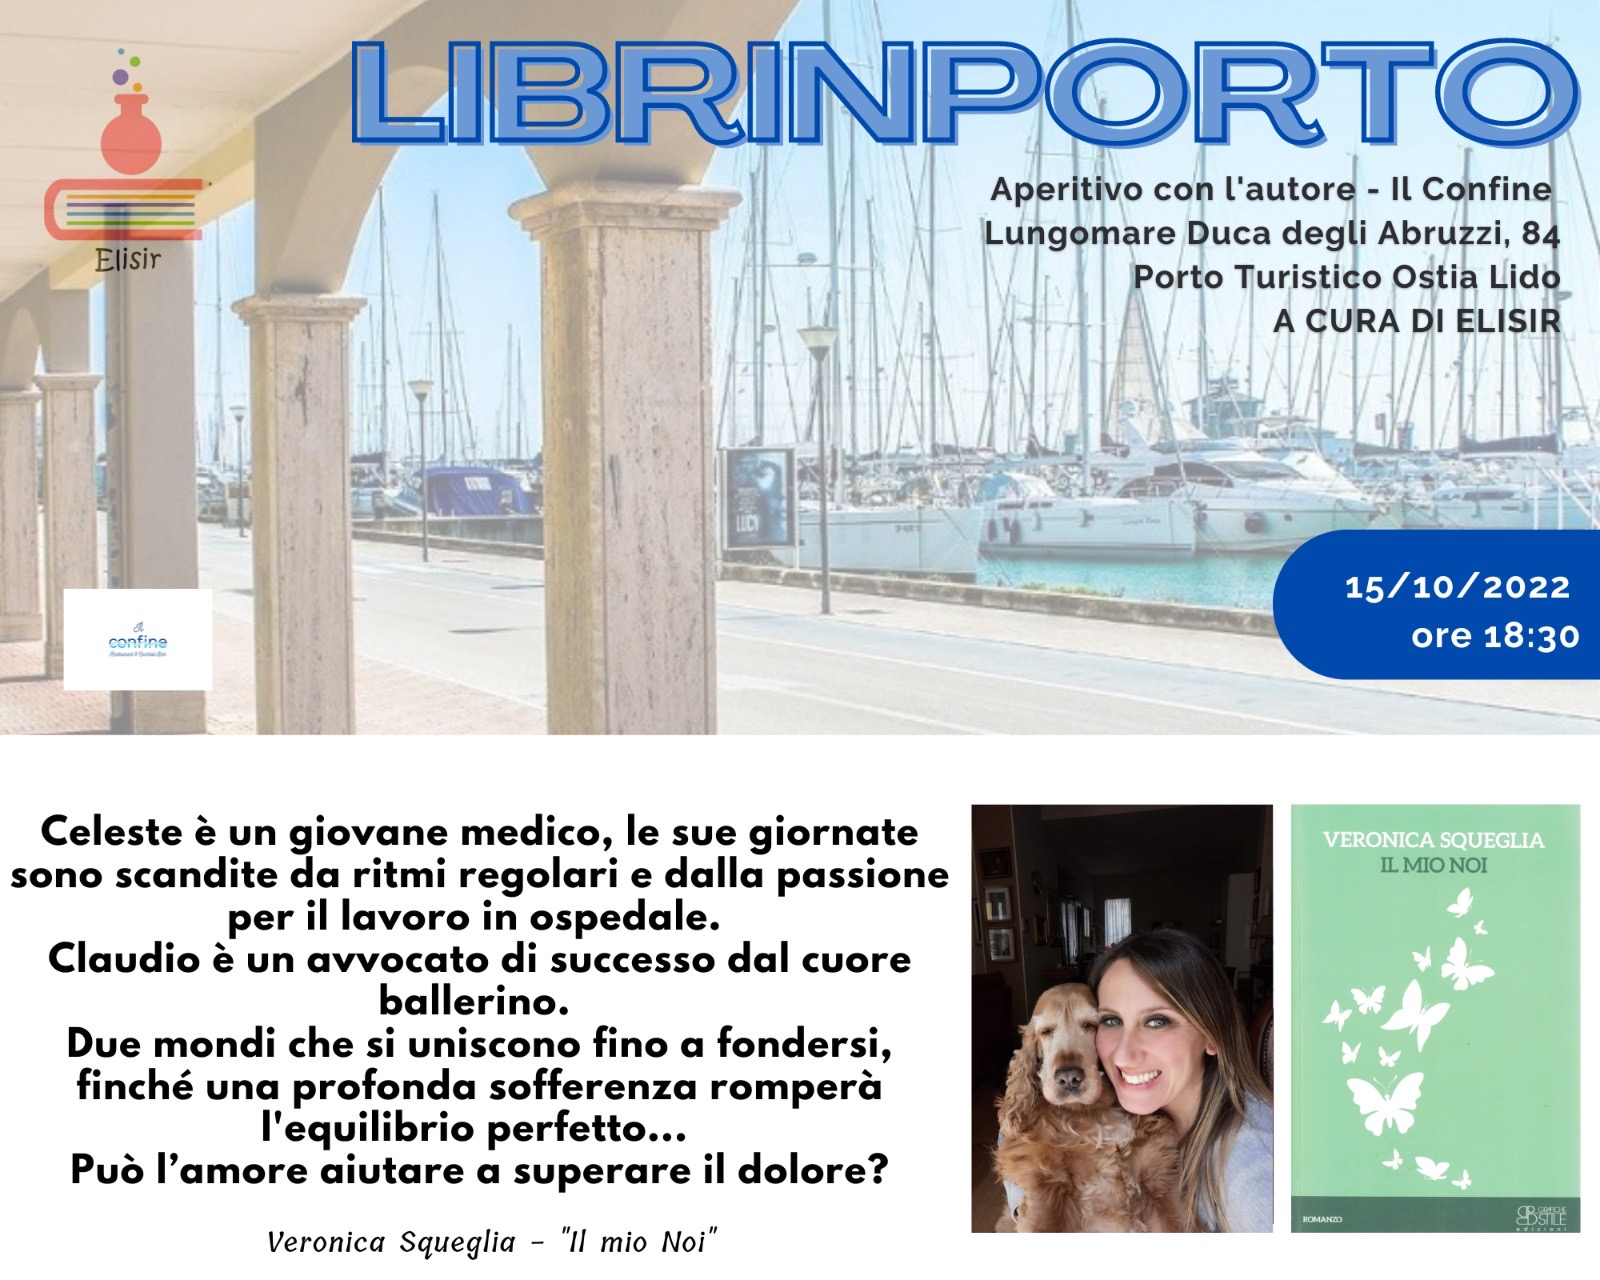 Terzo appuntamento con “LibrInporto” – Al Porto di Ostia il romanzo di Veronica Squeglia e quello di Giangiacomo Tedeschi